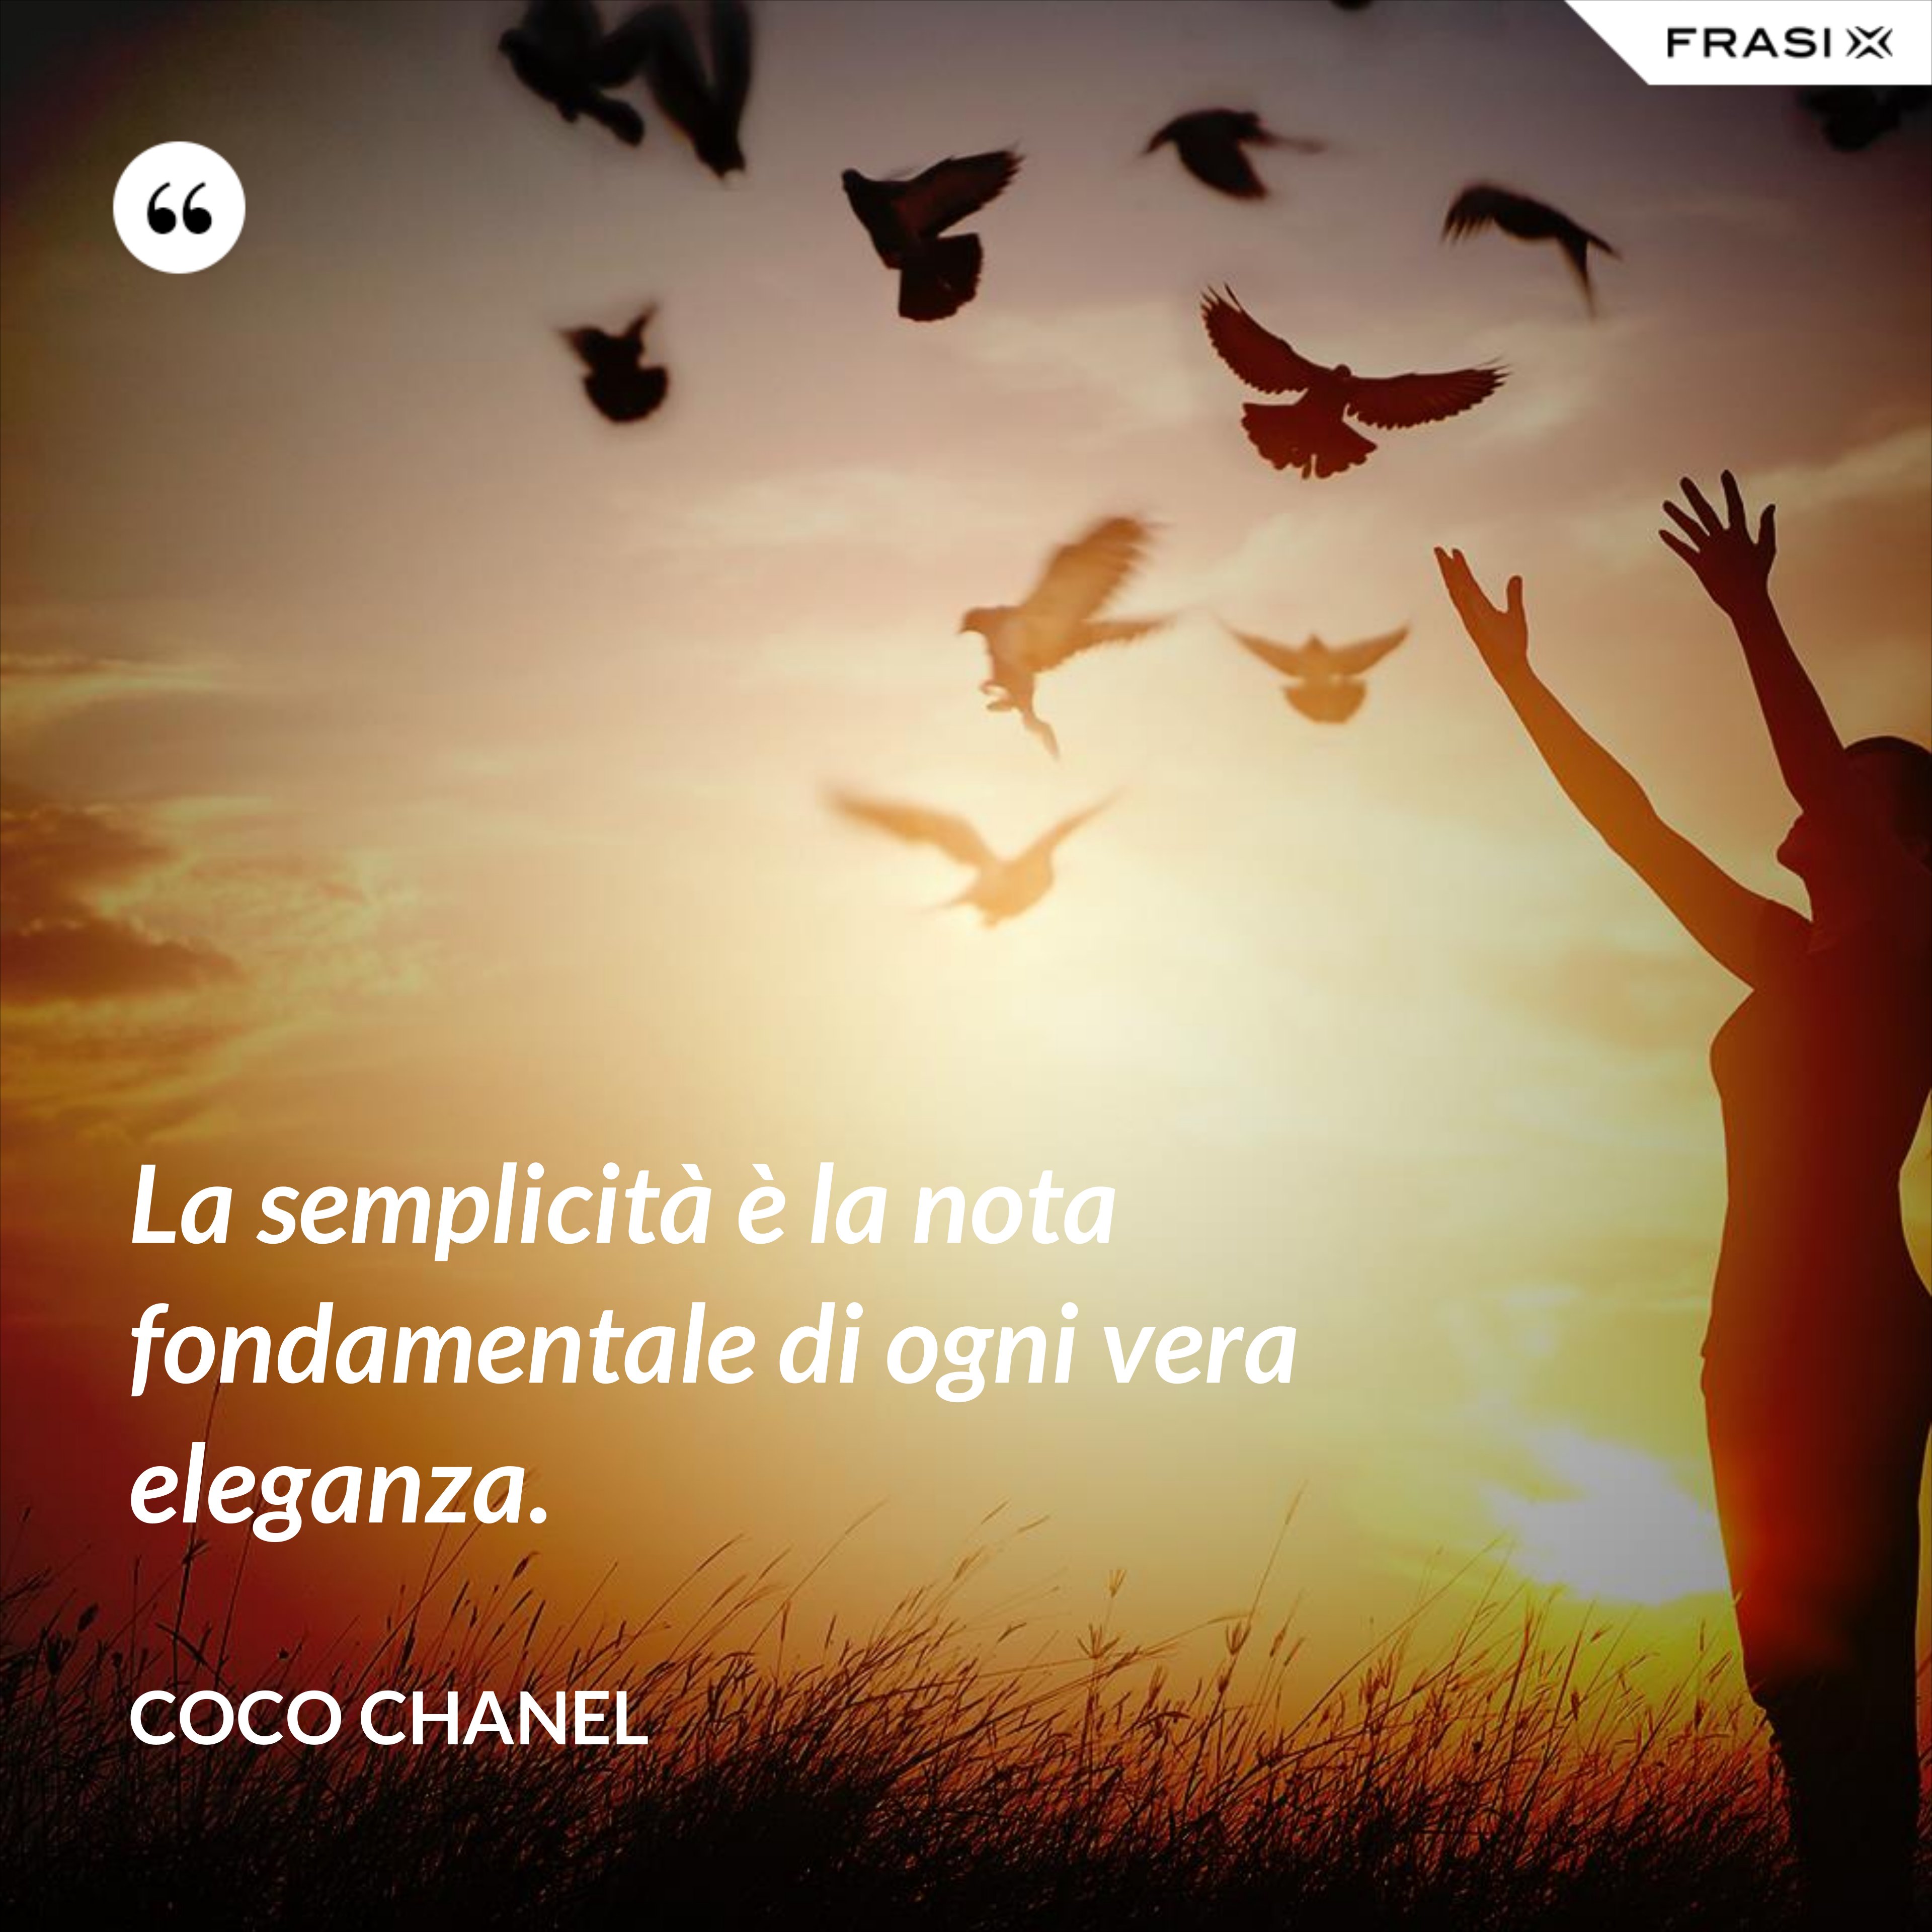 La semplicità è la nota fondamentale di ogni vera eleganza. - Coco Chanel